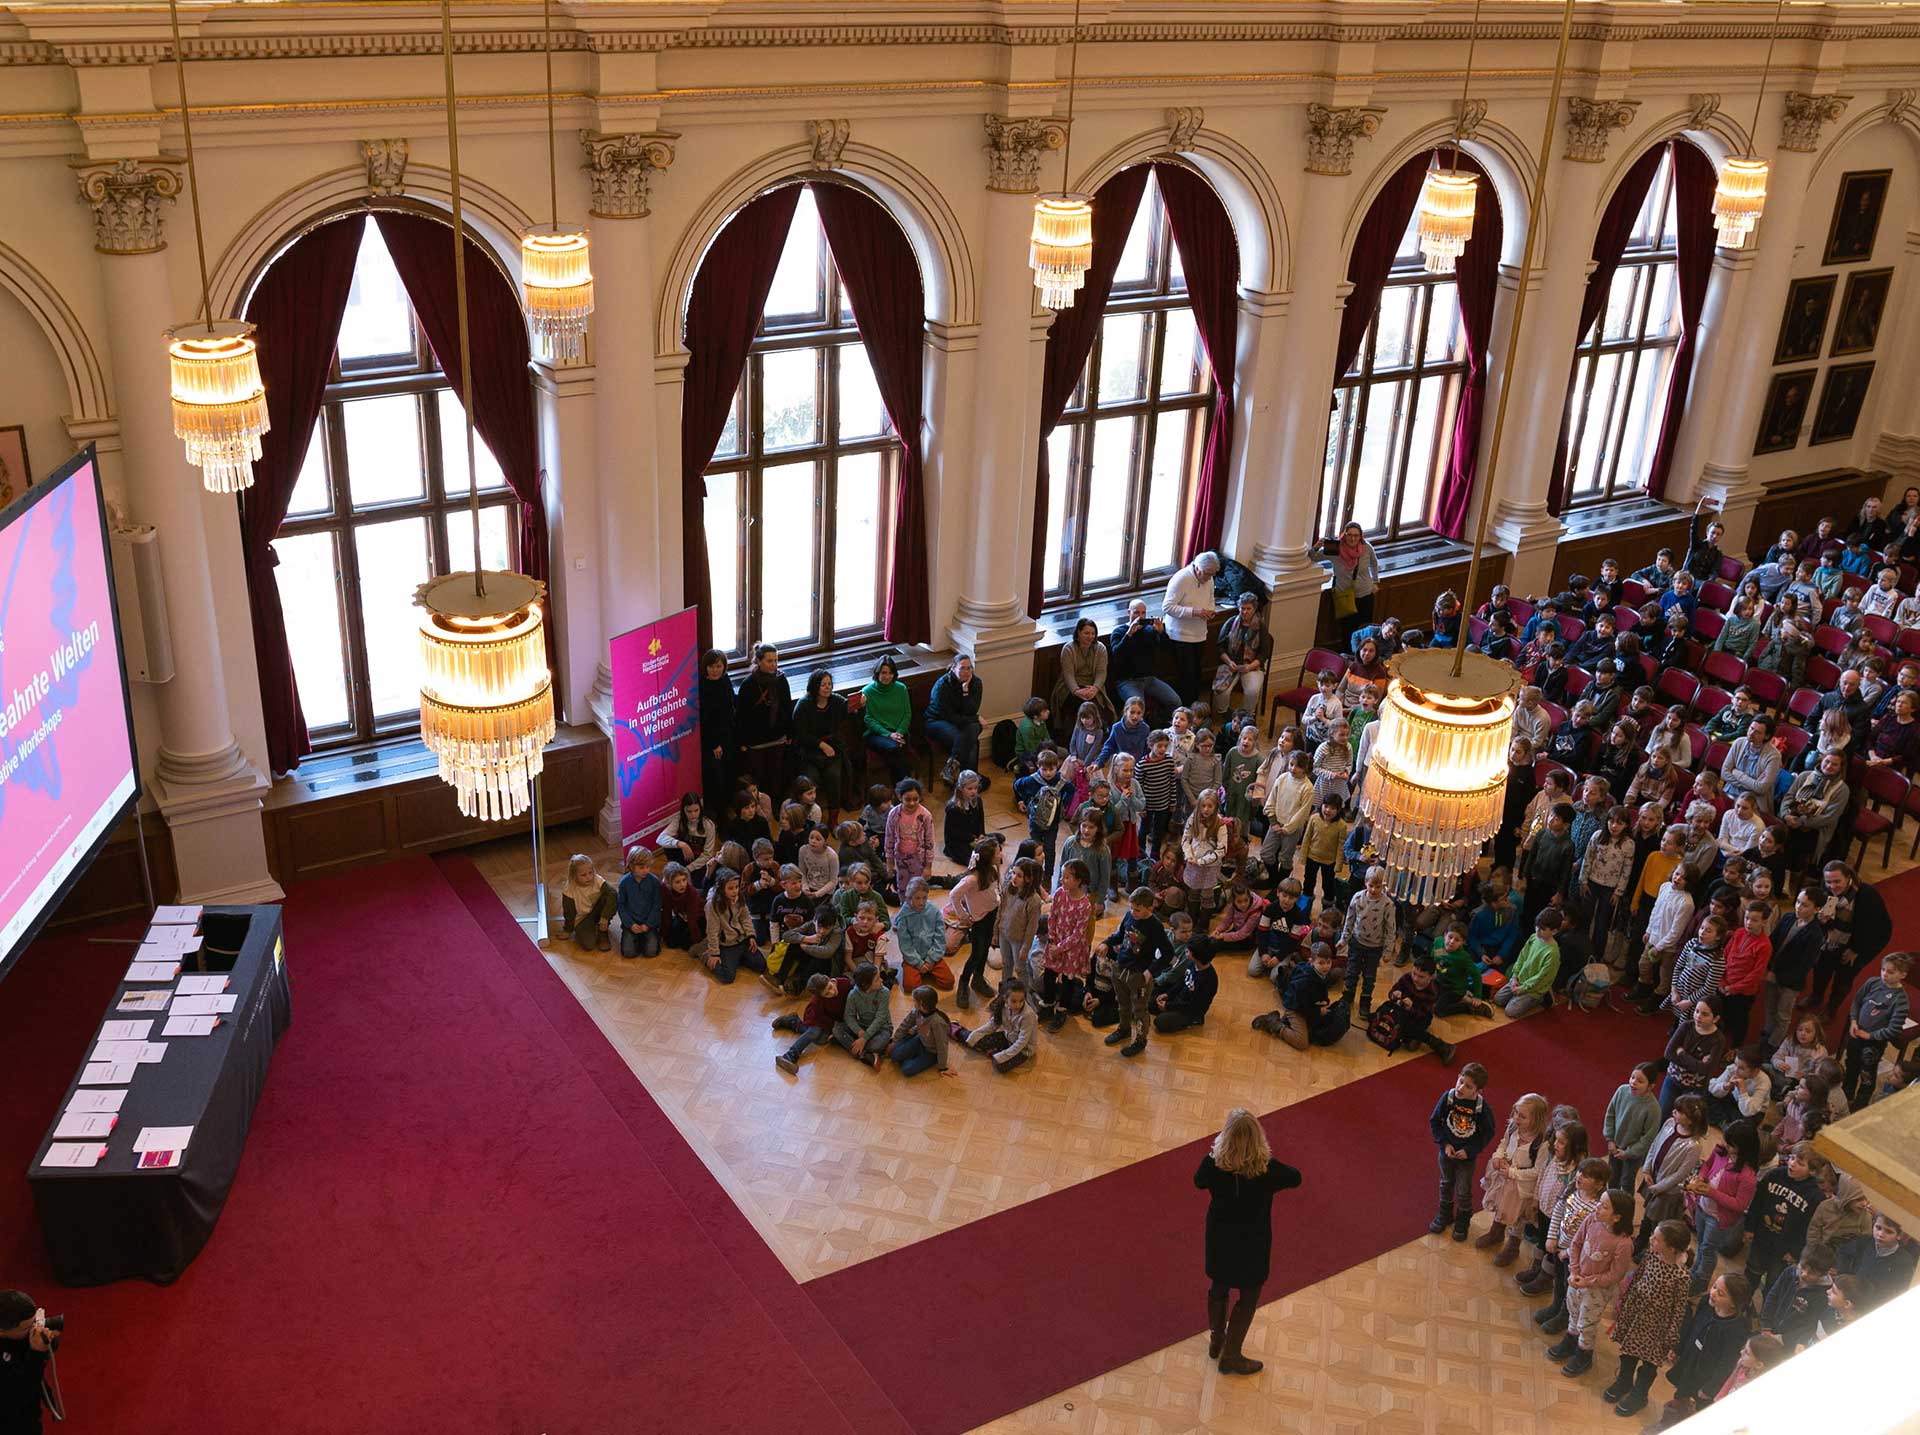 Viele Kinder in der Aula der Uni Graz, fotografiert von oben, von der Galerie 